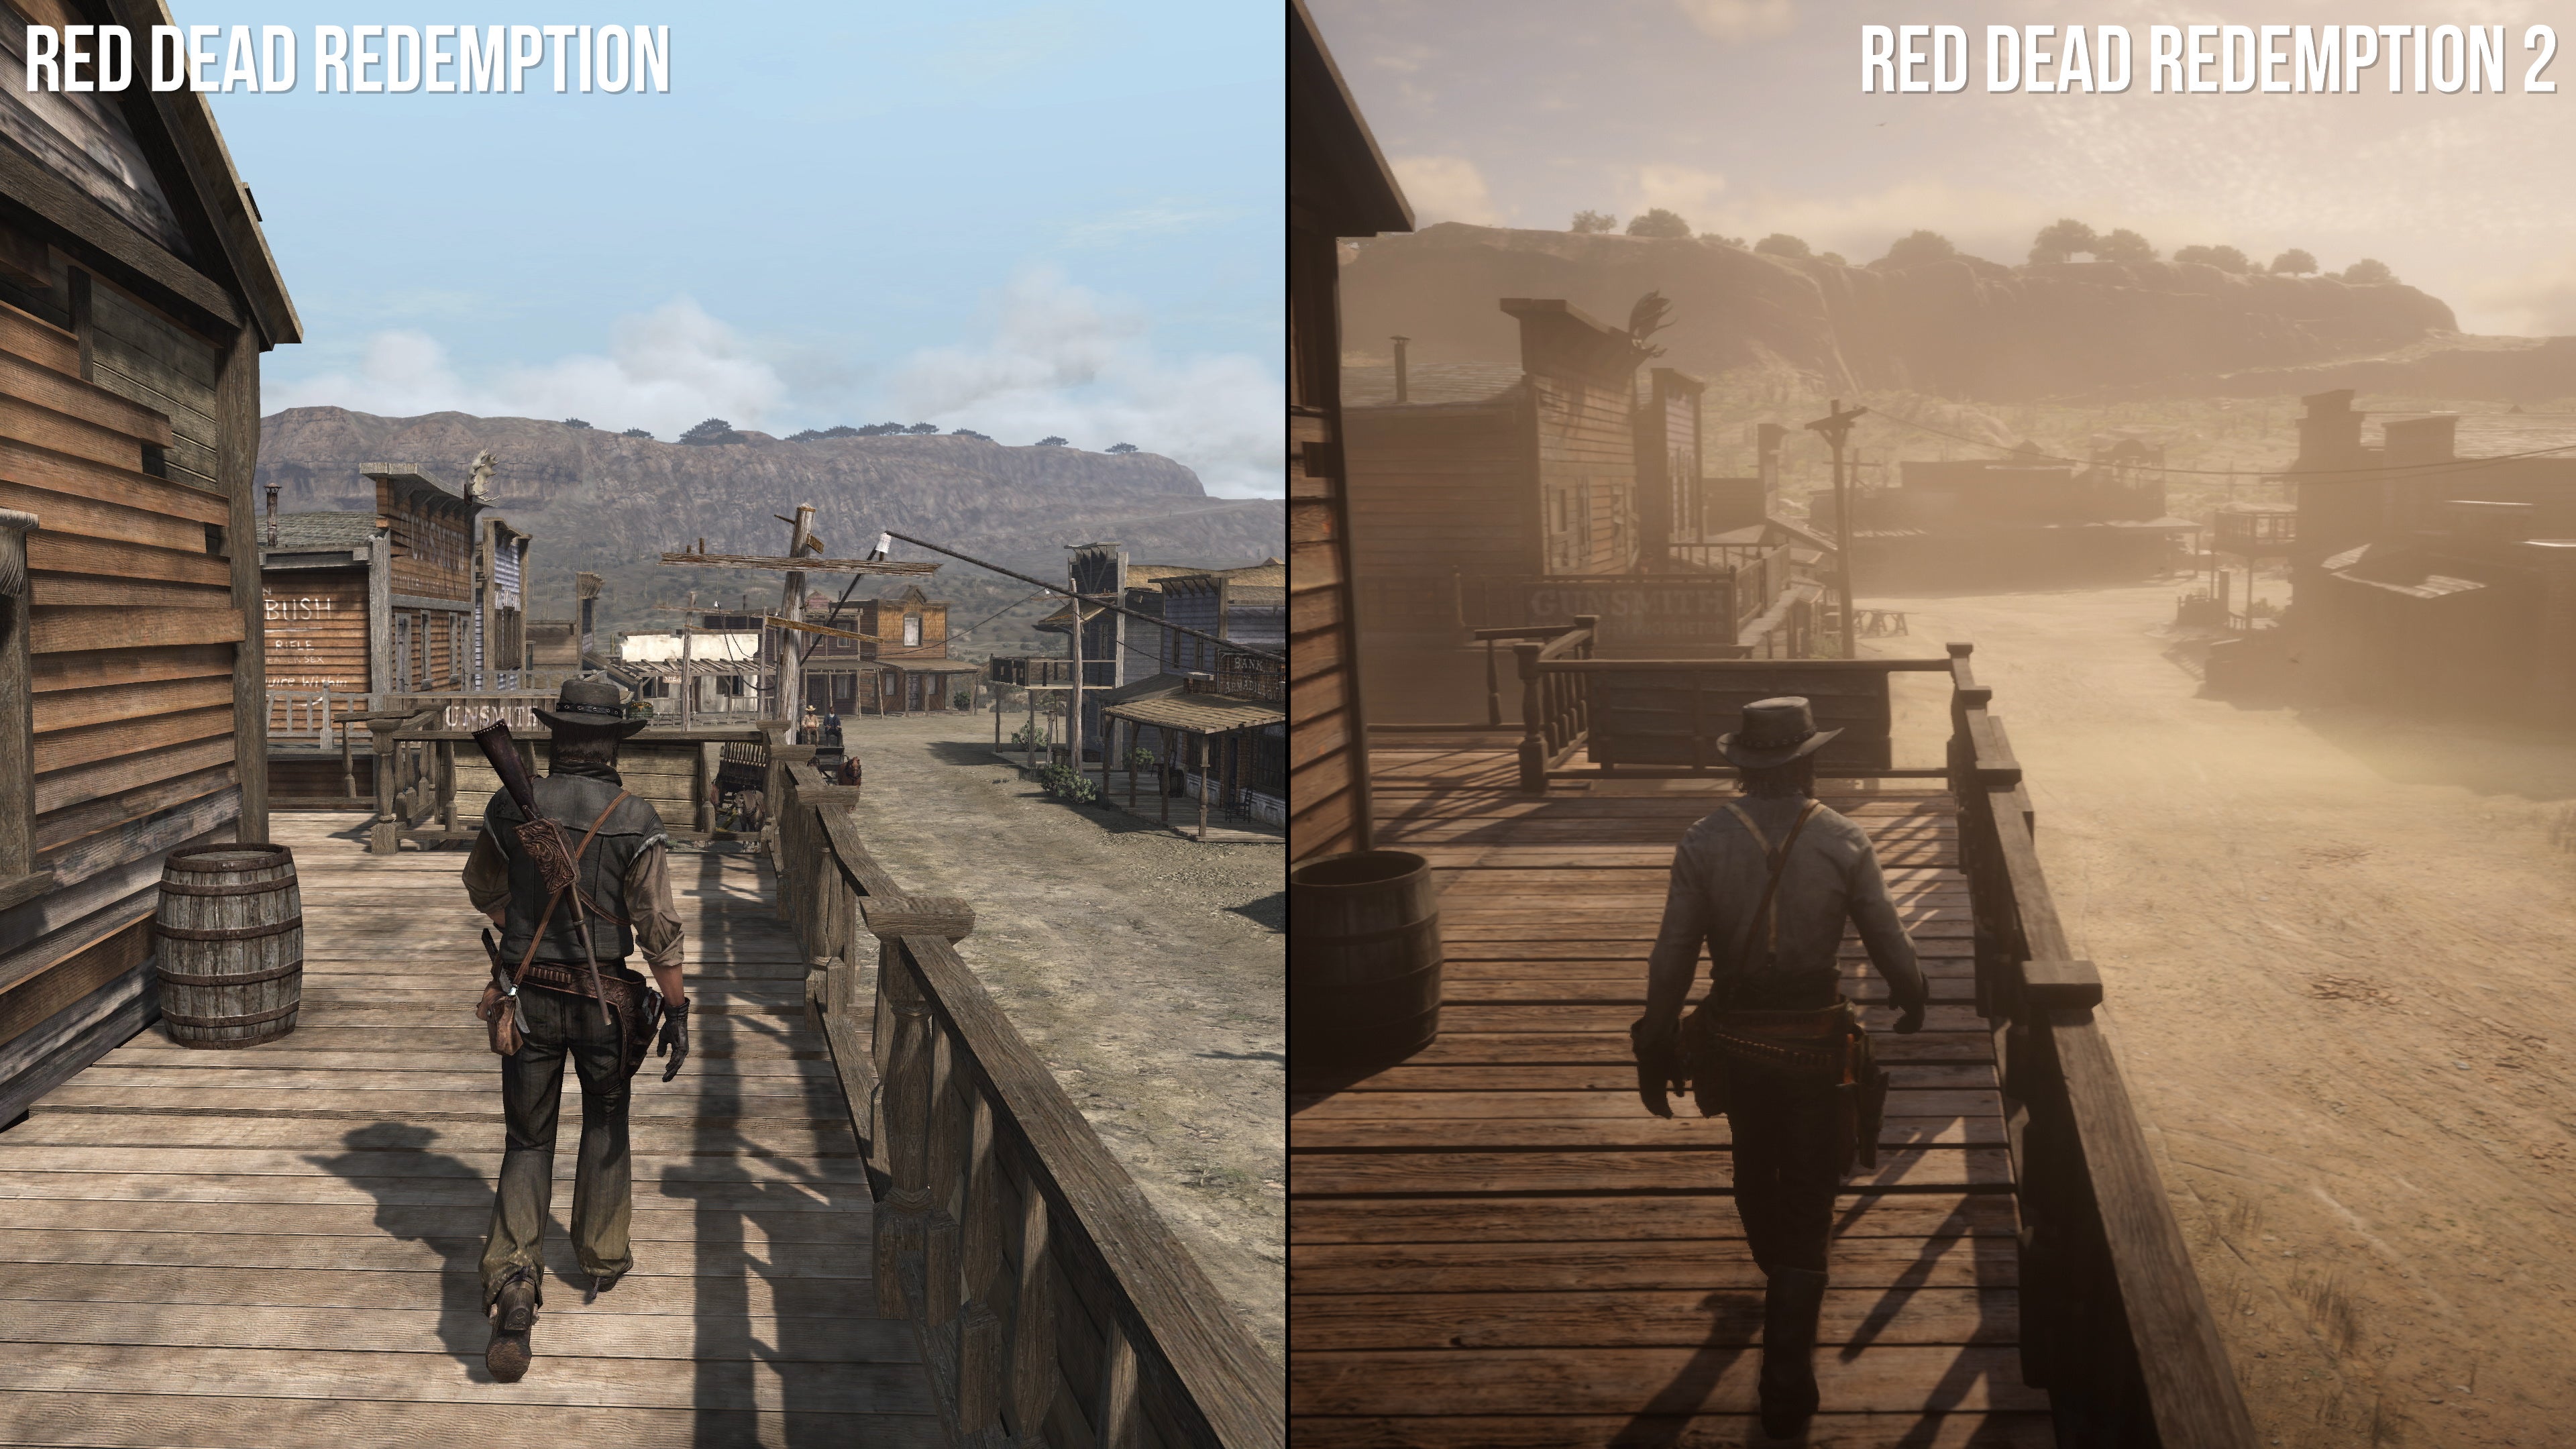 rent faktisk Jeg var overrasket ganske enkelt Blackwater and beyond: Red Dead Redemption 1/2 directly compared |  Eurogamer.net